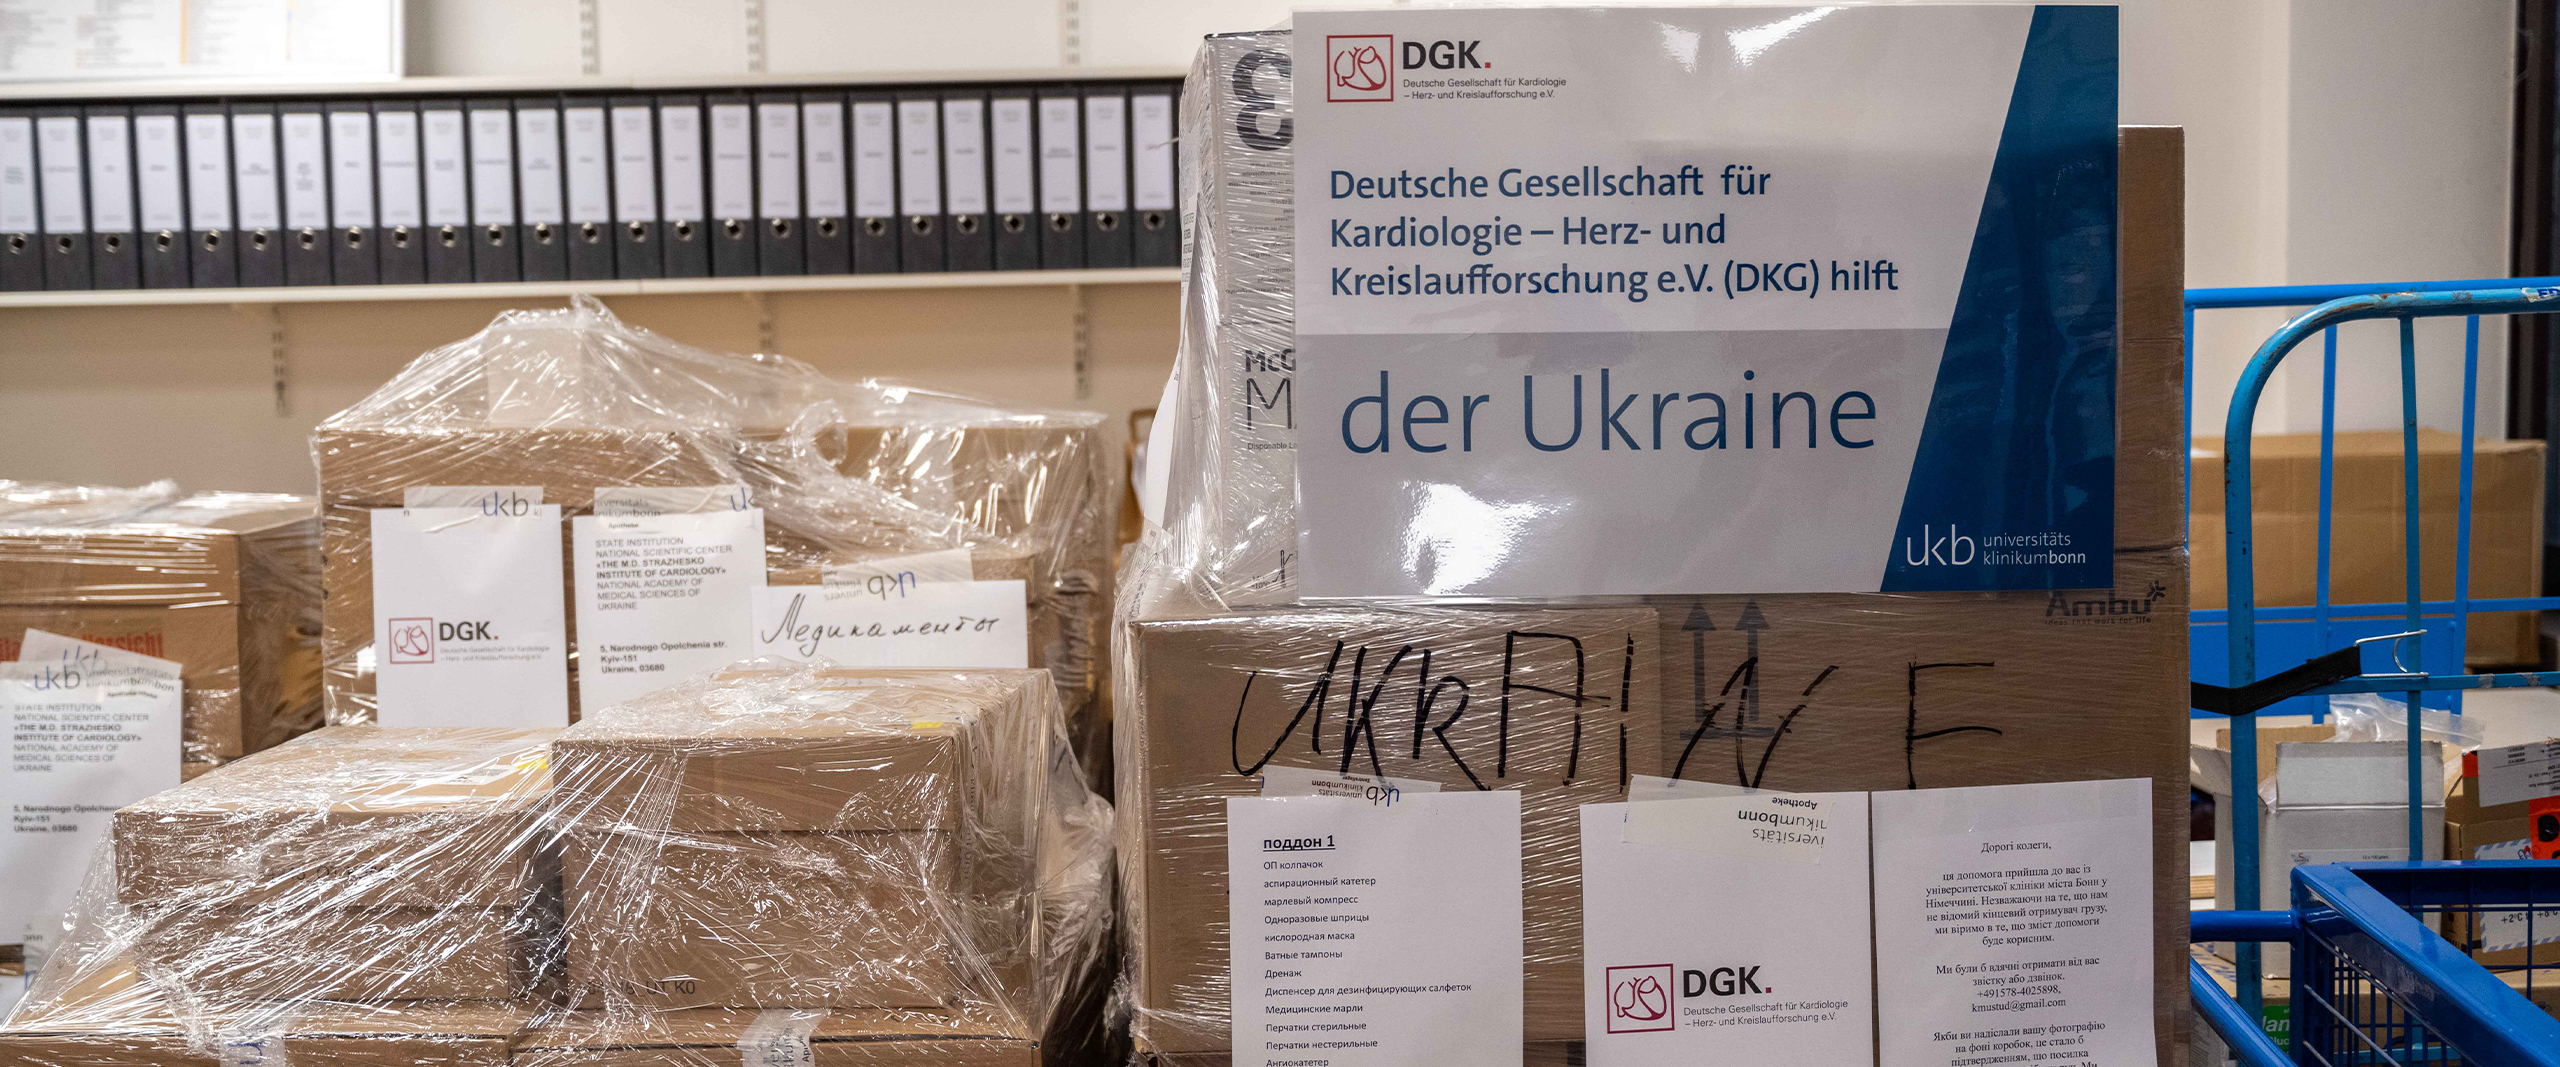 Die deutsche Gesellschaft für Kardiologie hilft Herzzentrum in der Ukraine mithilfe des Universitätsklinikums Bonn